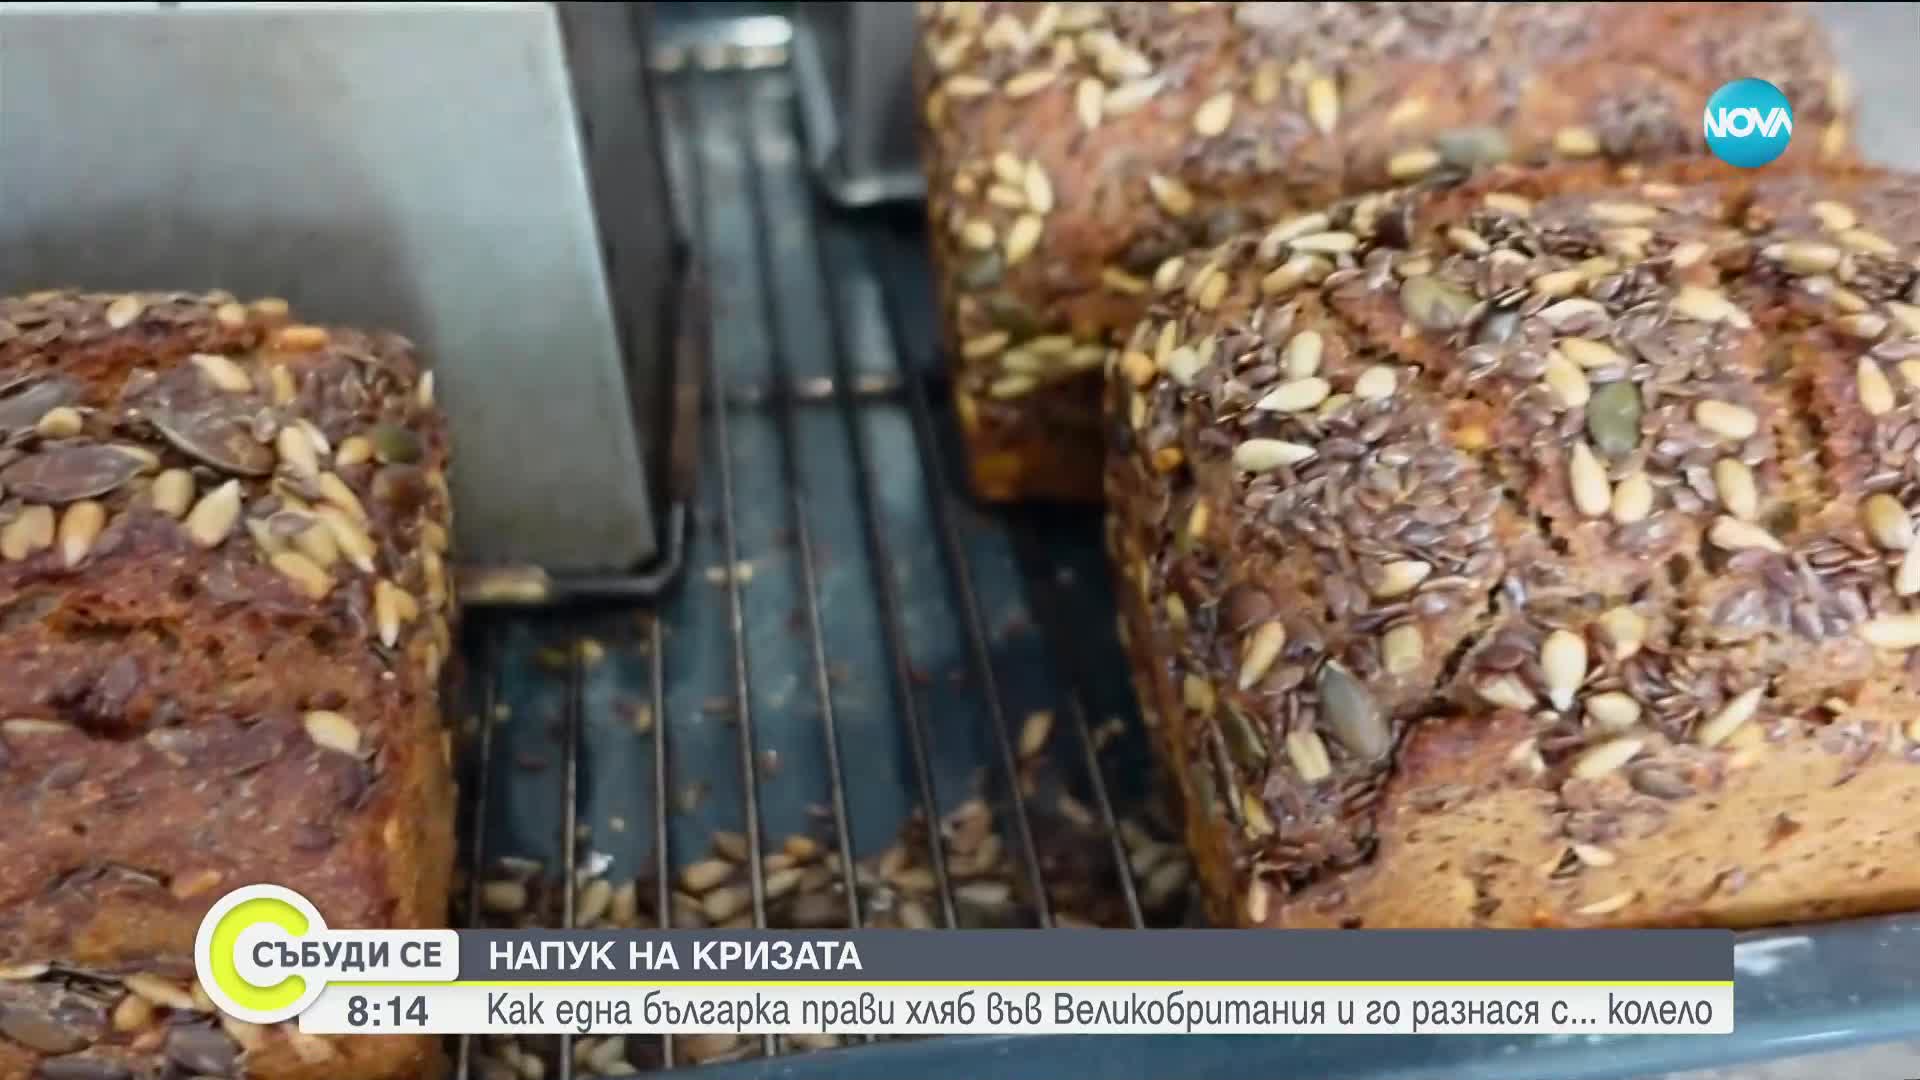 Въпреки кризата във Великобритания: Българка развива успешен бизнес с хляб